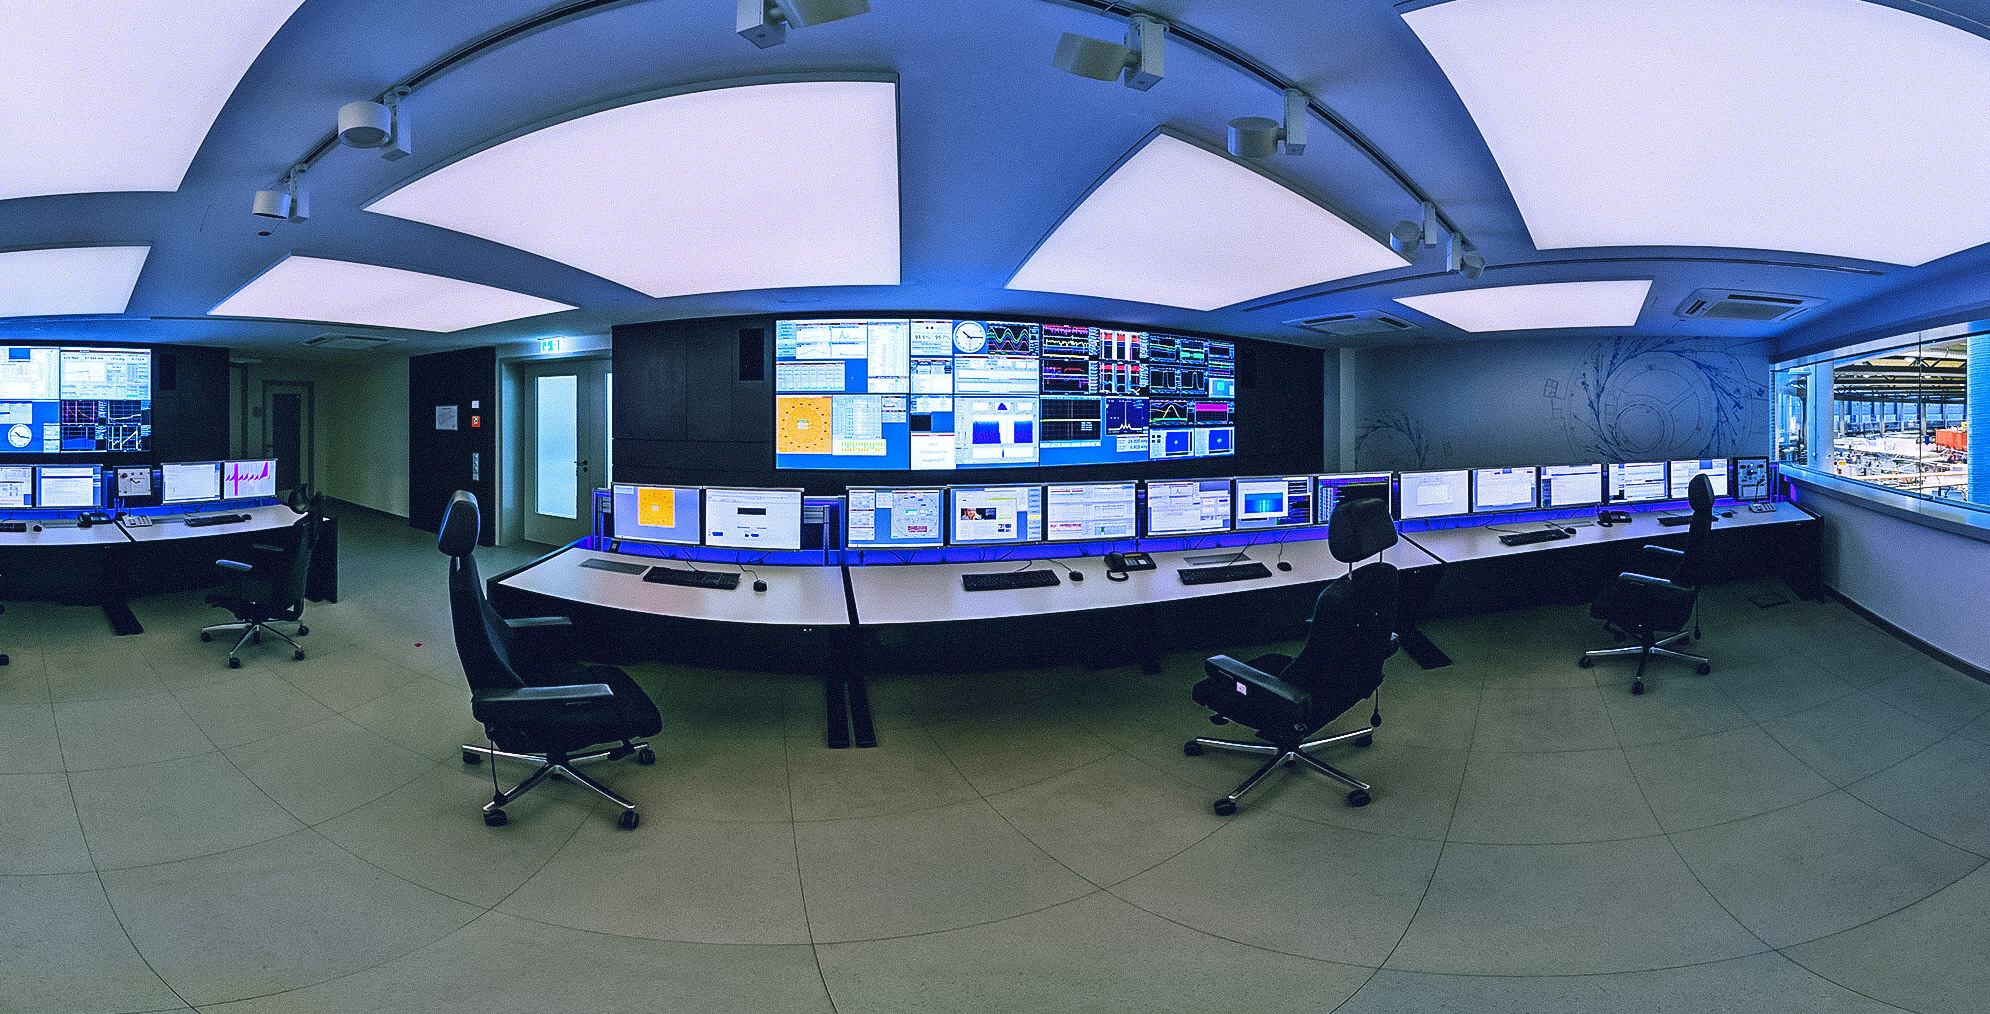 Virtuelle 360°-Tour im Anlagen-Kontrollraum für die Steuerung des Elektronen-Speicherrings Bessy II bei HZB in Berlin-Adlershof